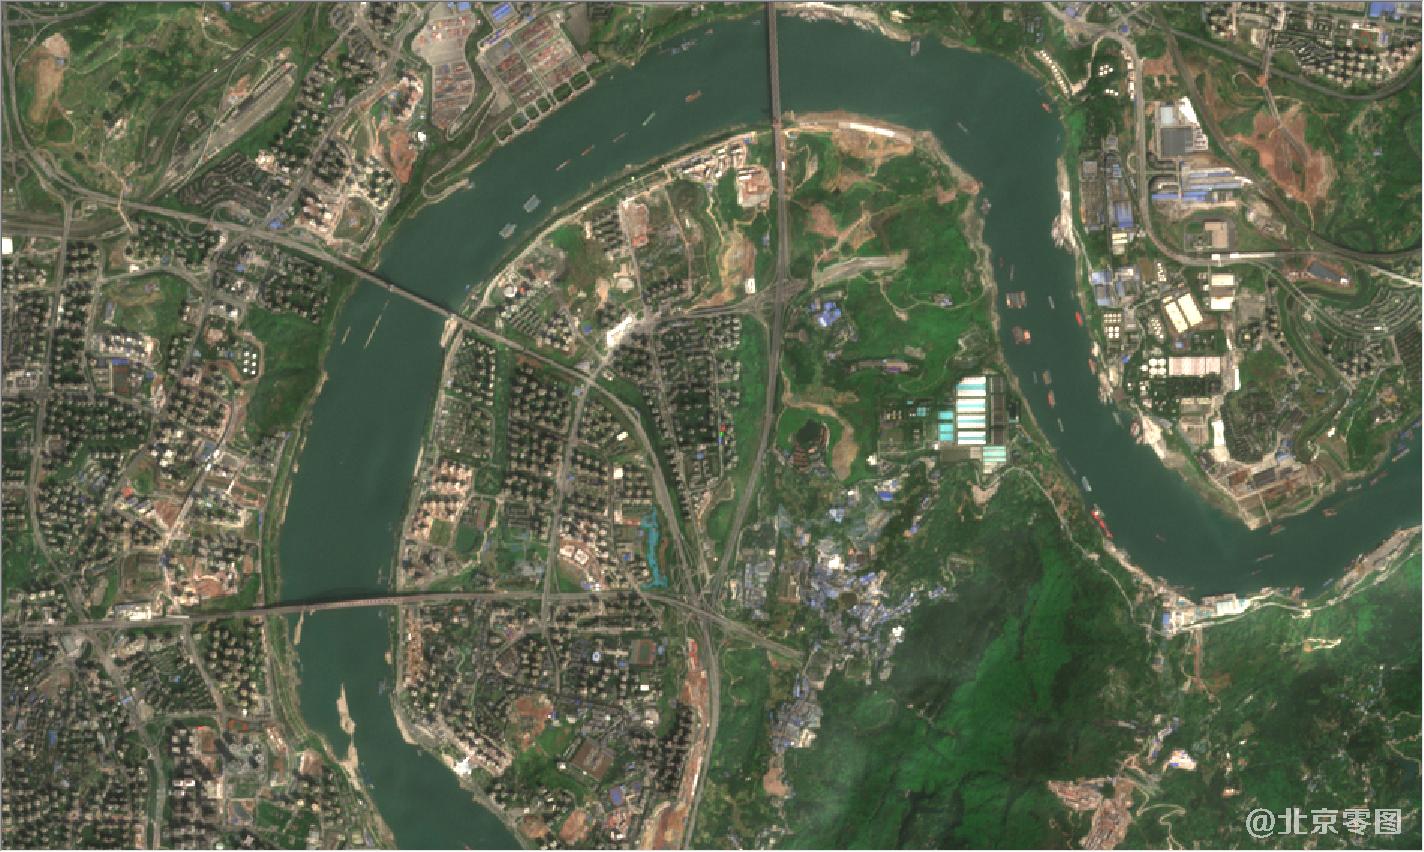 年3月份卫星地图以下为重庆市2021年最新卫星地图,涵盖了重庆市市区